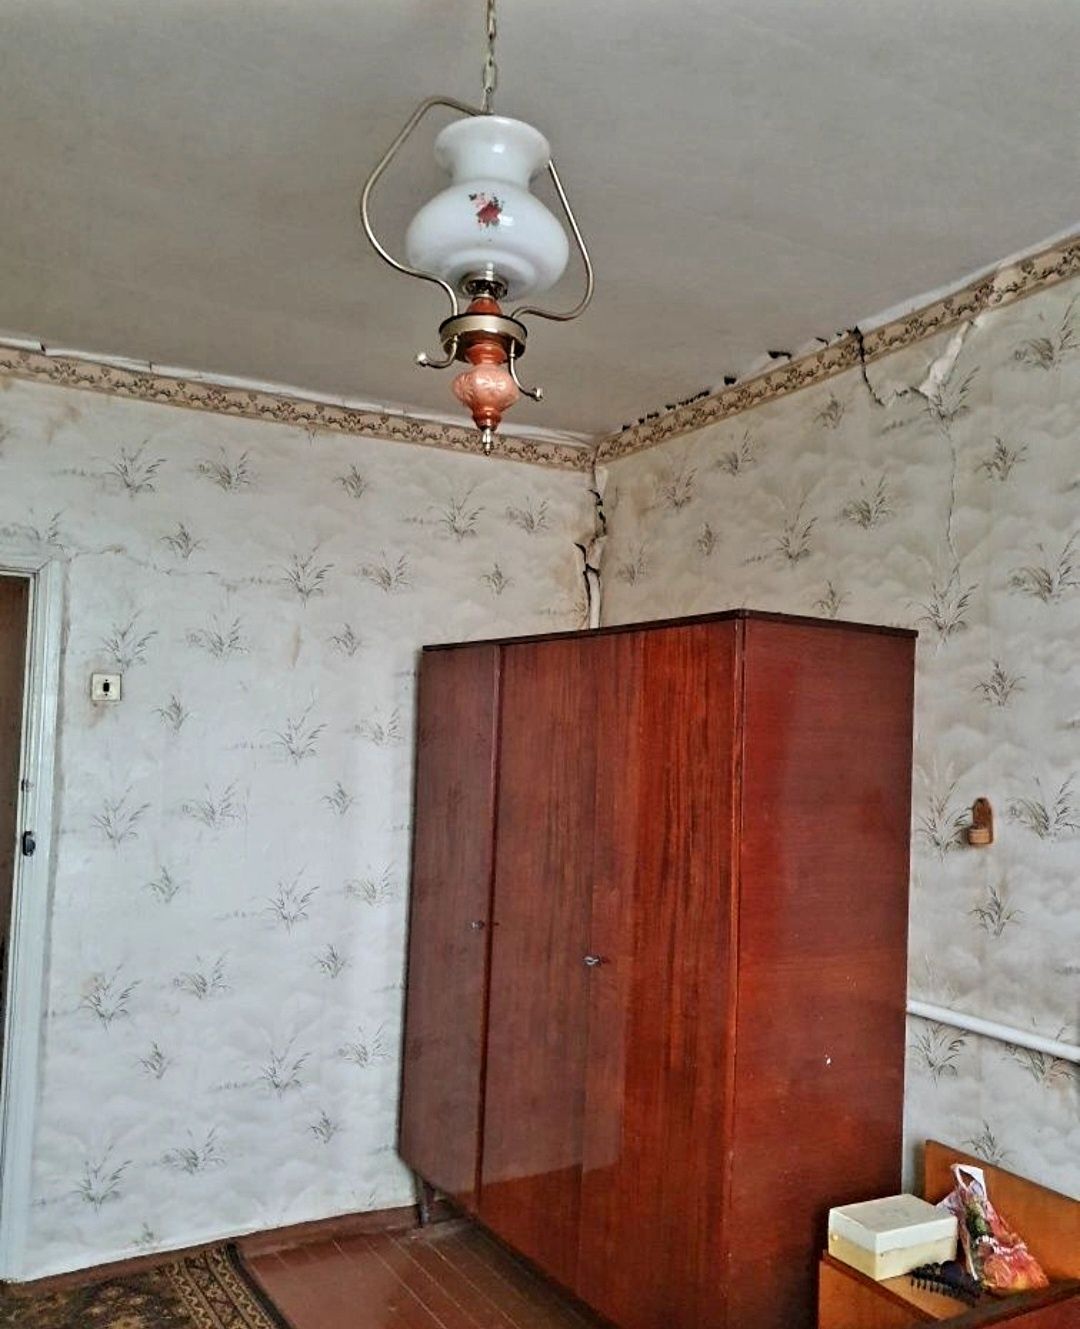 Продам дом Берёзовка со всеми удобствами под реконструкцию или снос